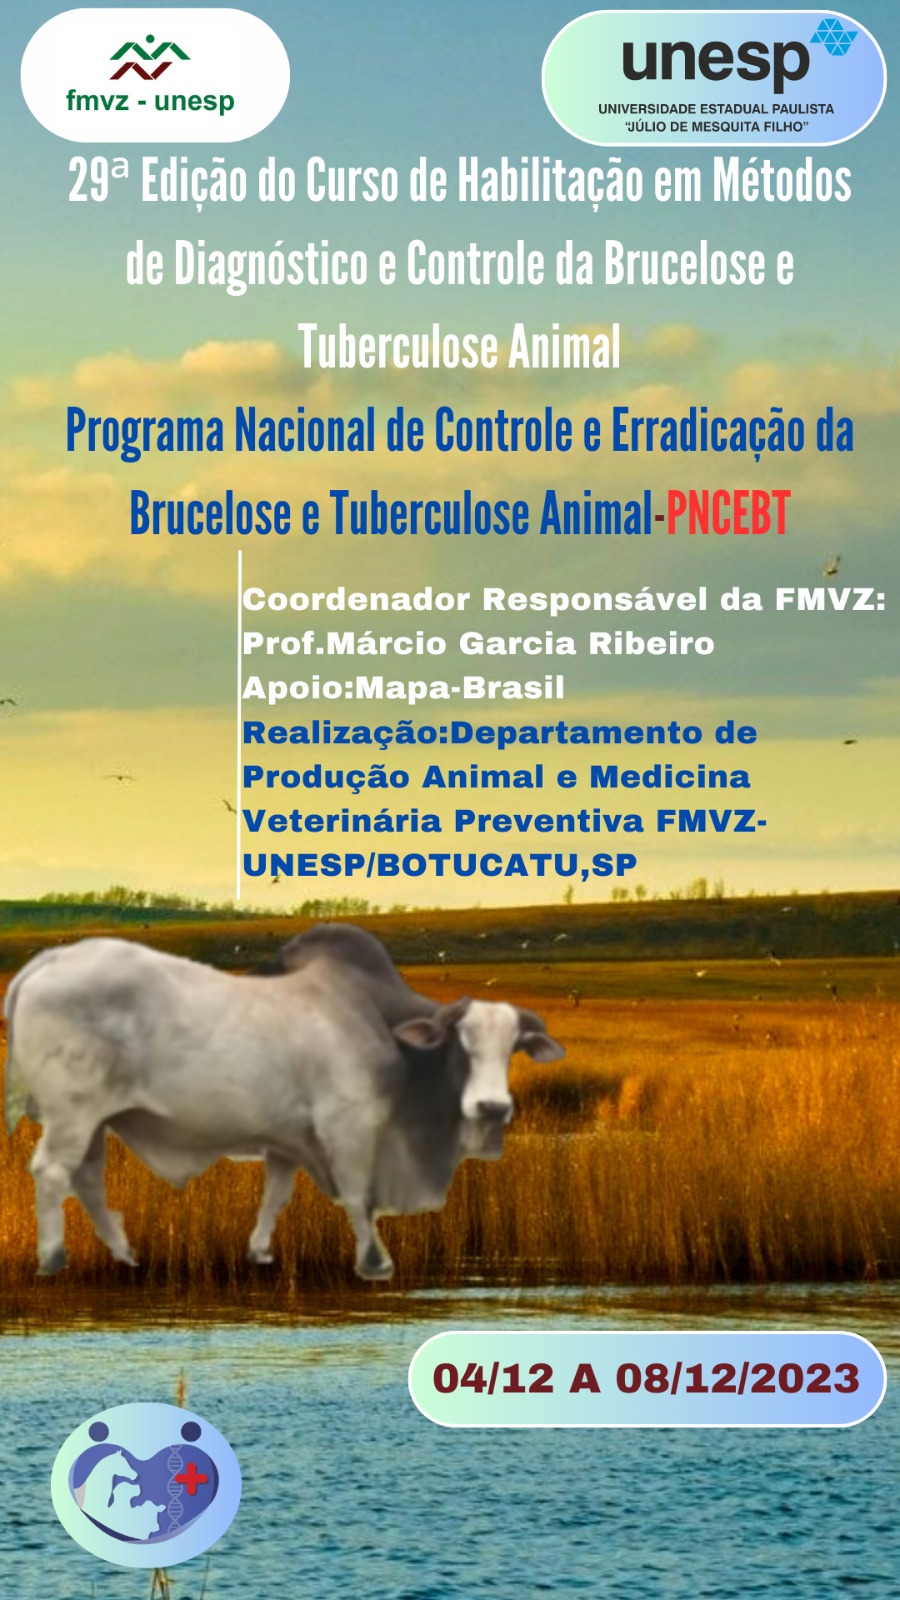 CURSO DE HABILITAÇÃO EM MÉTODOS DE DIAGNÓSTICO E CONTROLE DA BRUCELOSE E TUBERCULOSE ANIMAL/2023 (29ª EDIÇÃO)